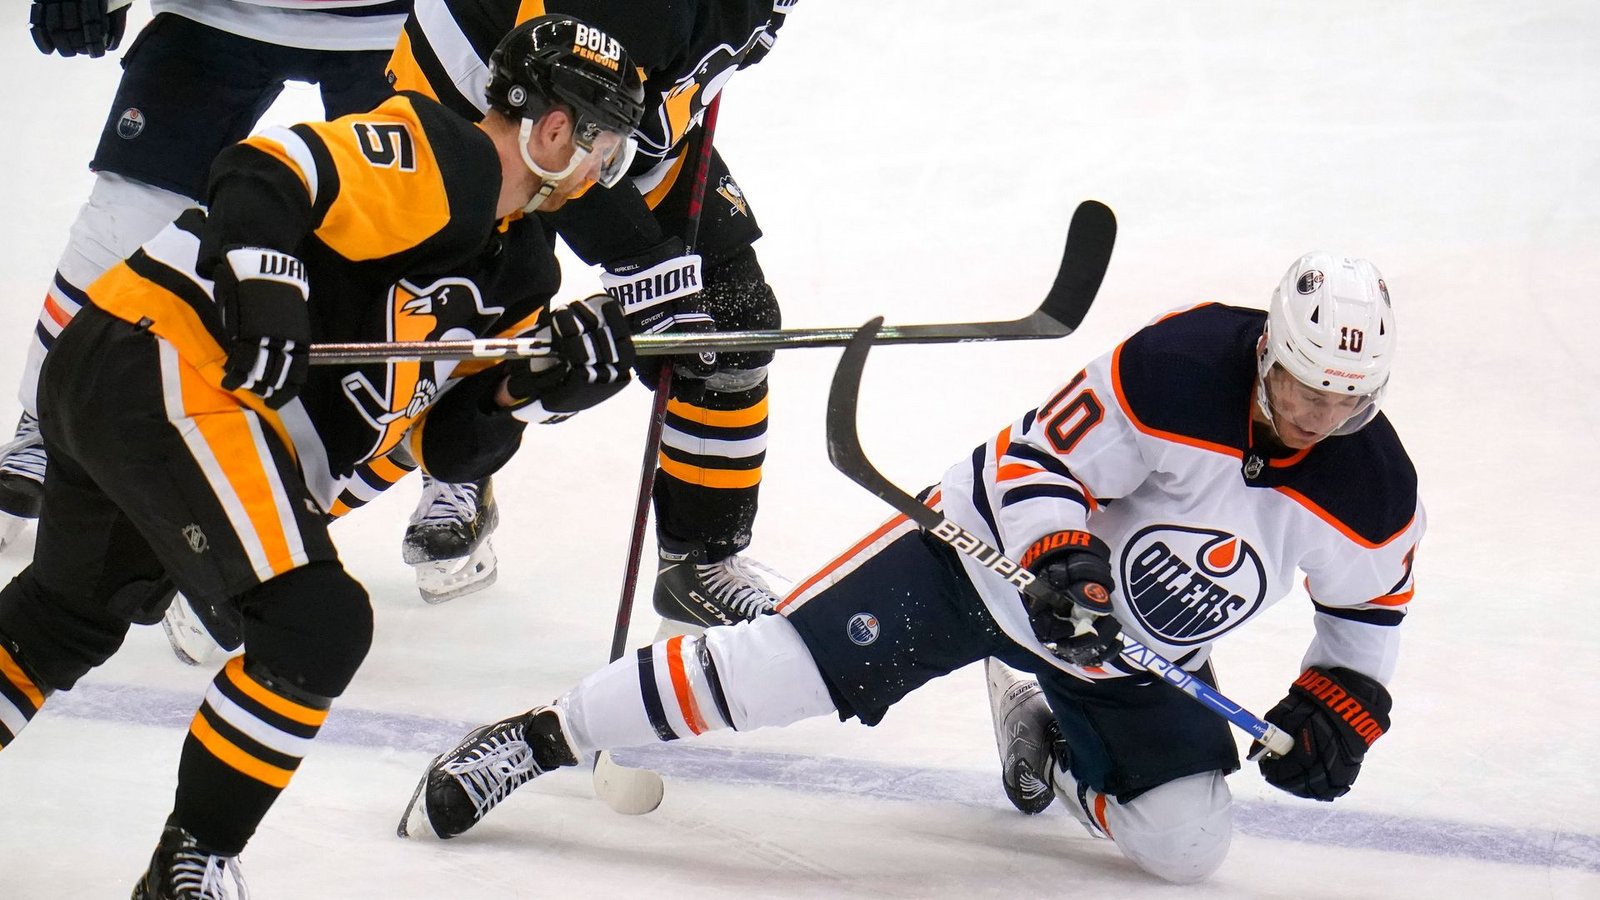 Derek Ryan (r) von den Oilers fällt nach einem Zusammenstoß mit Penguins' Mike Matheson auf das Eis.Foto: Gene J. Puskar/AP/dpa